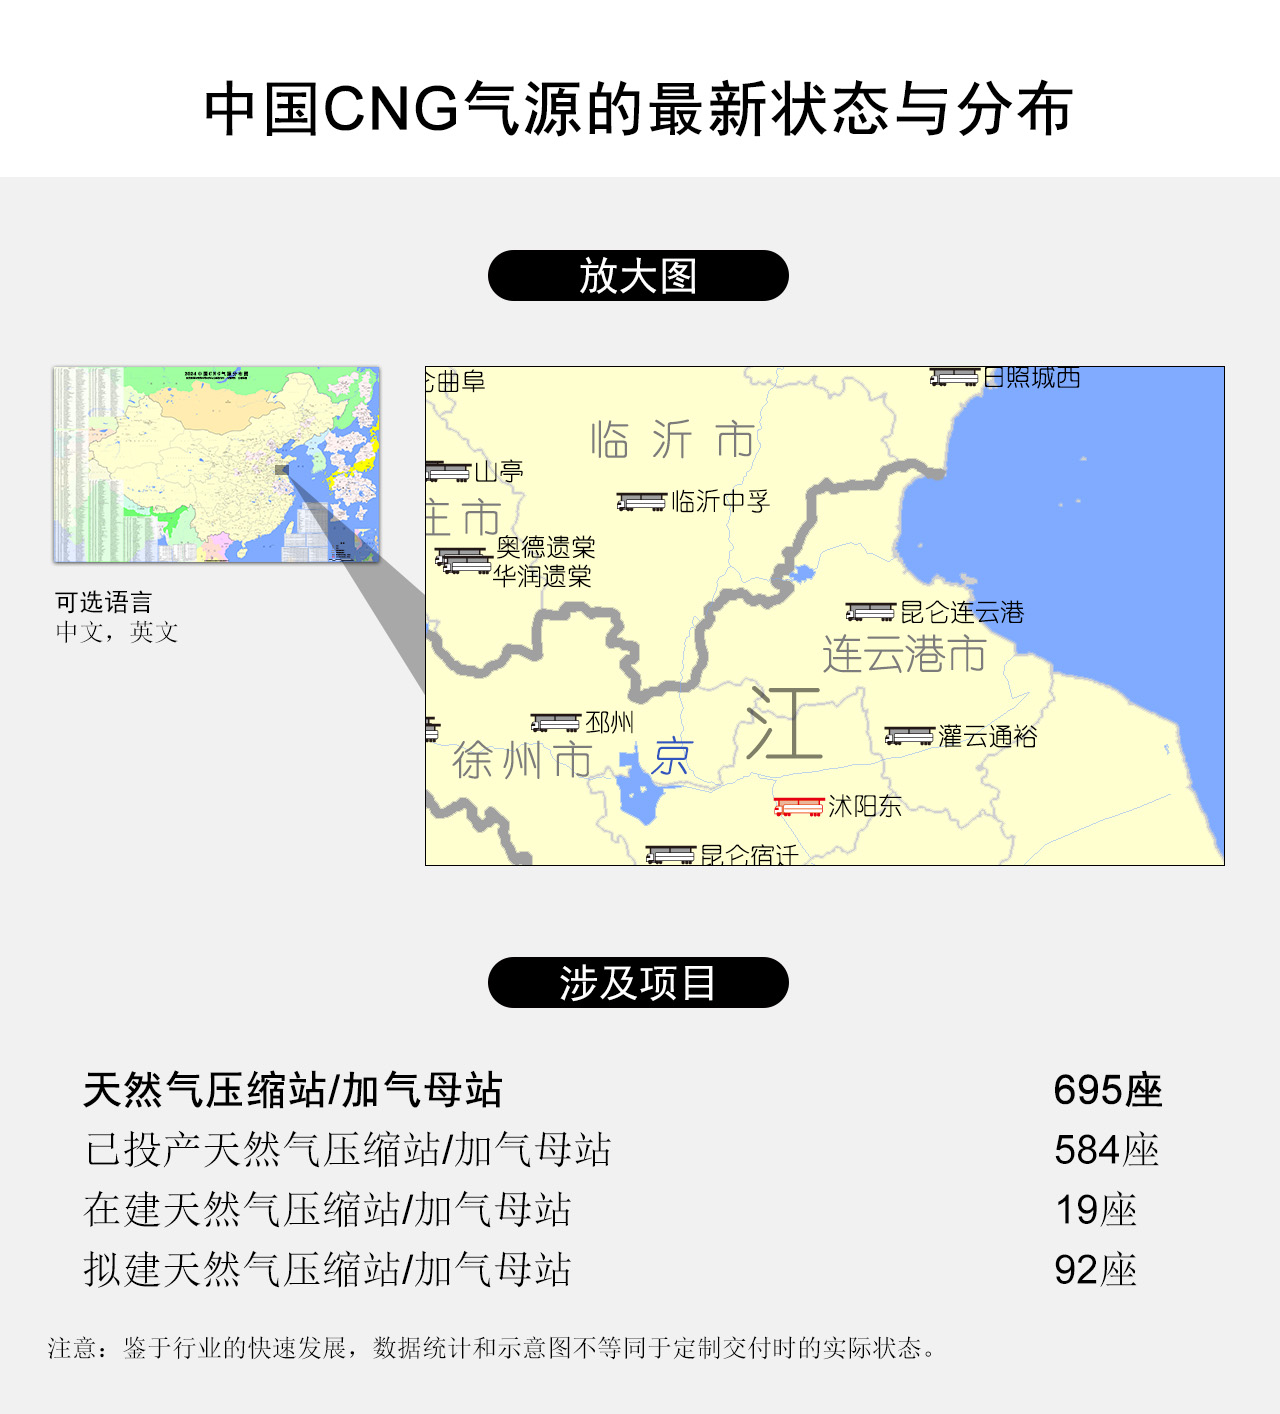 中国CNG气源的最新状态与分布